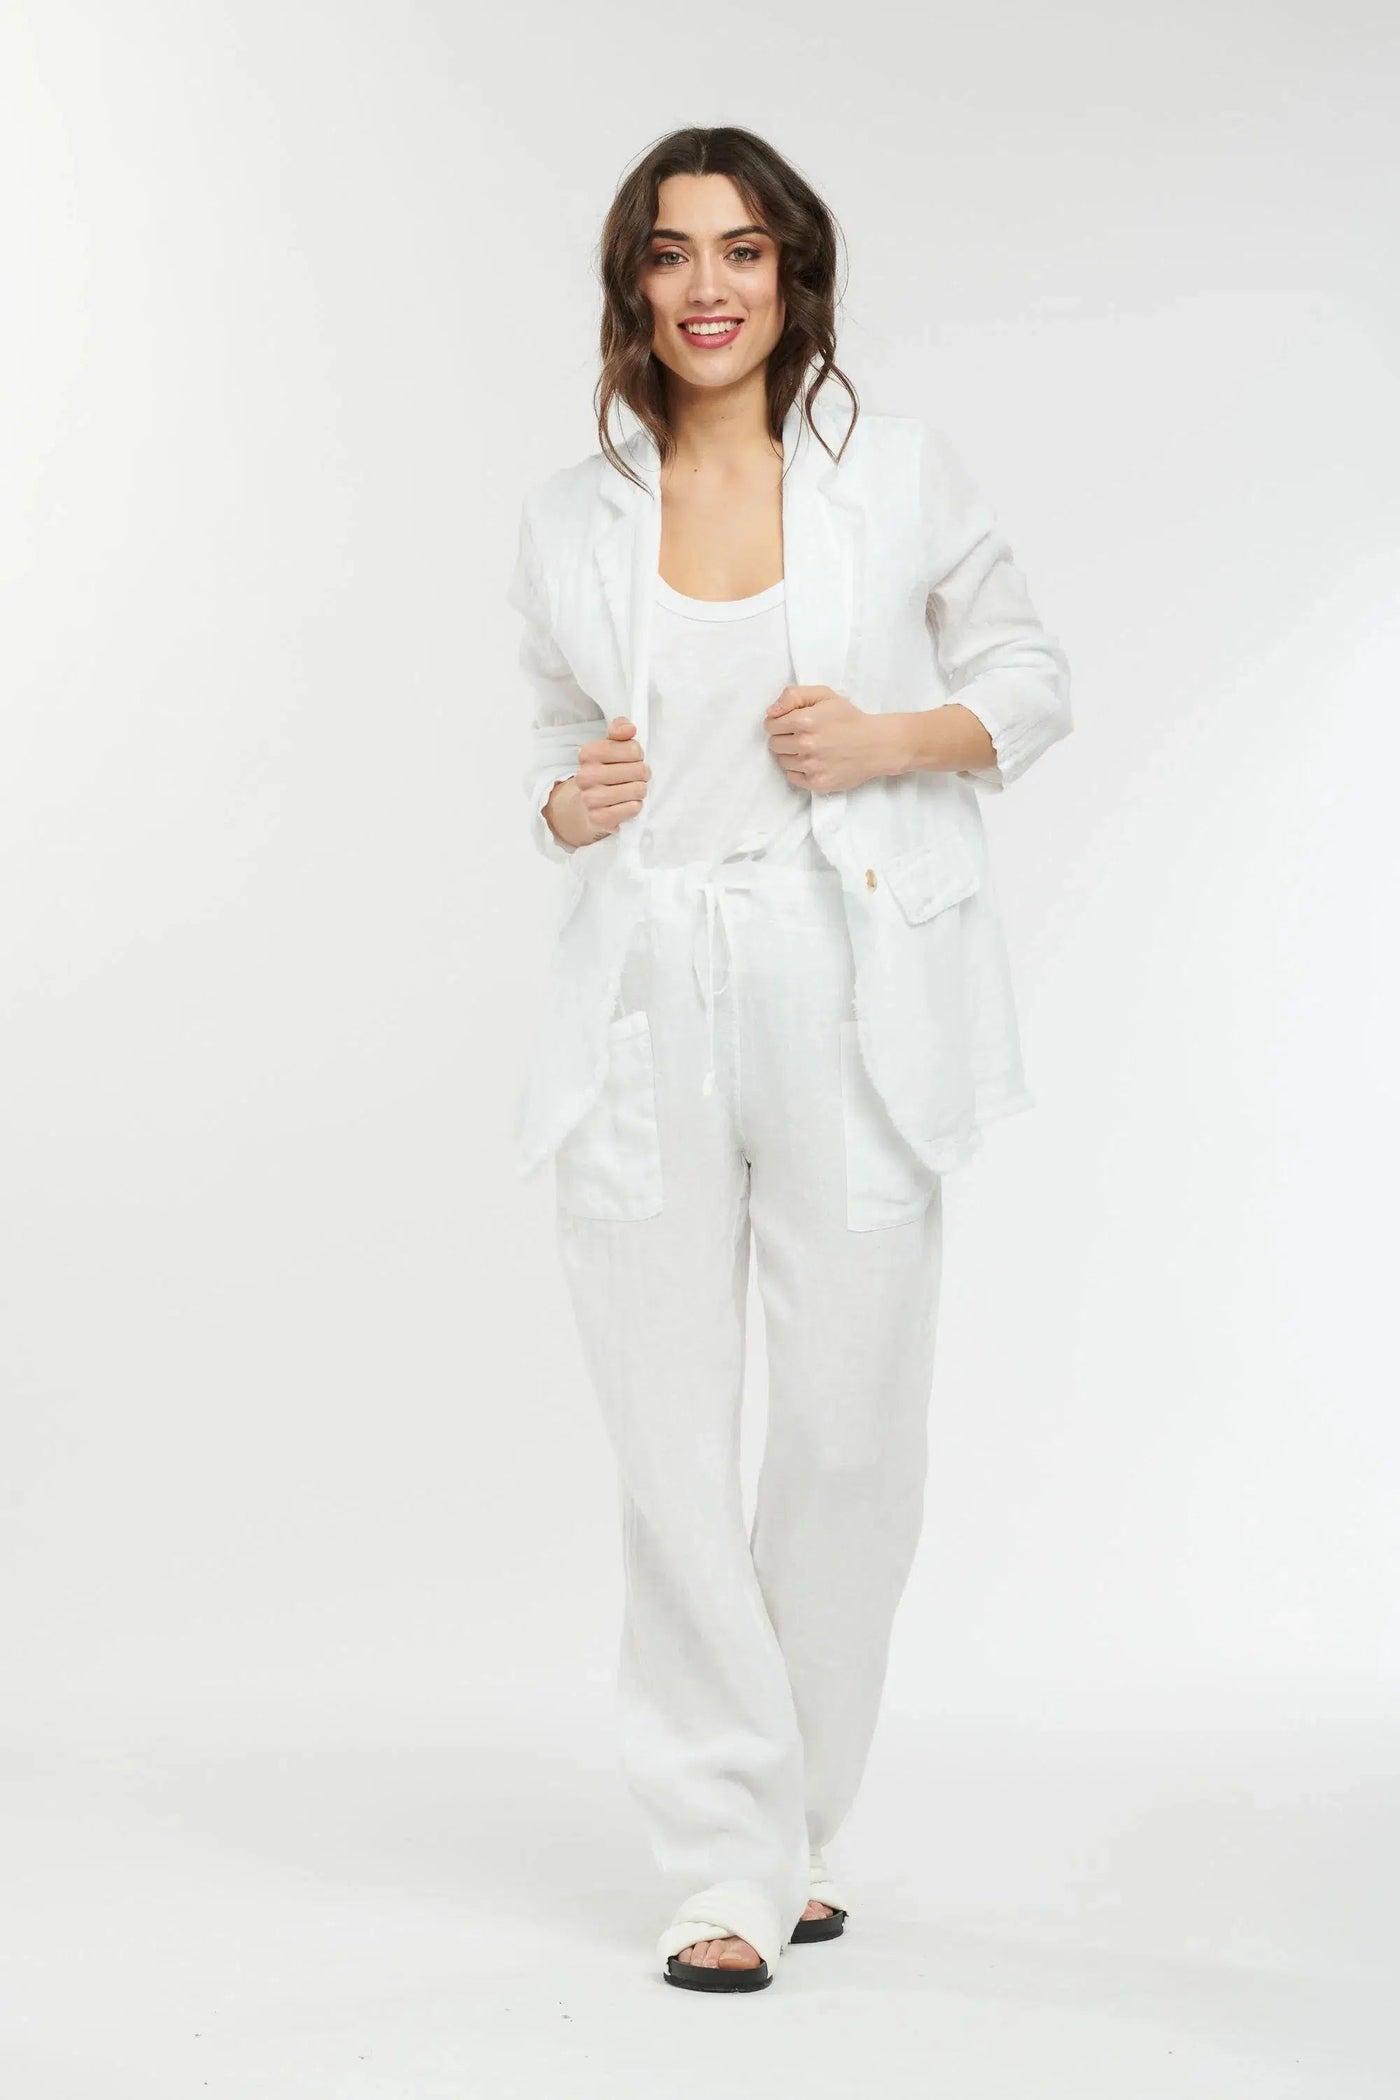 Summertime Linen Pant - White & Gold-Italian Star-Lima & Co